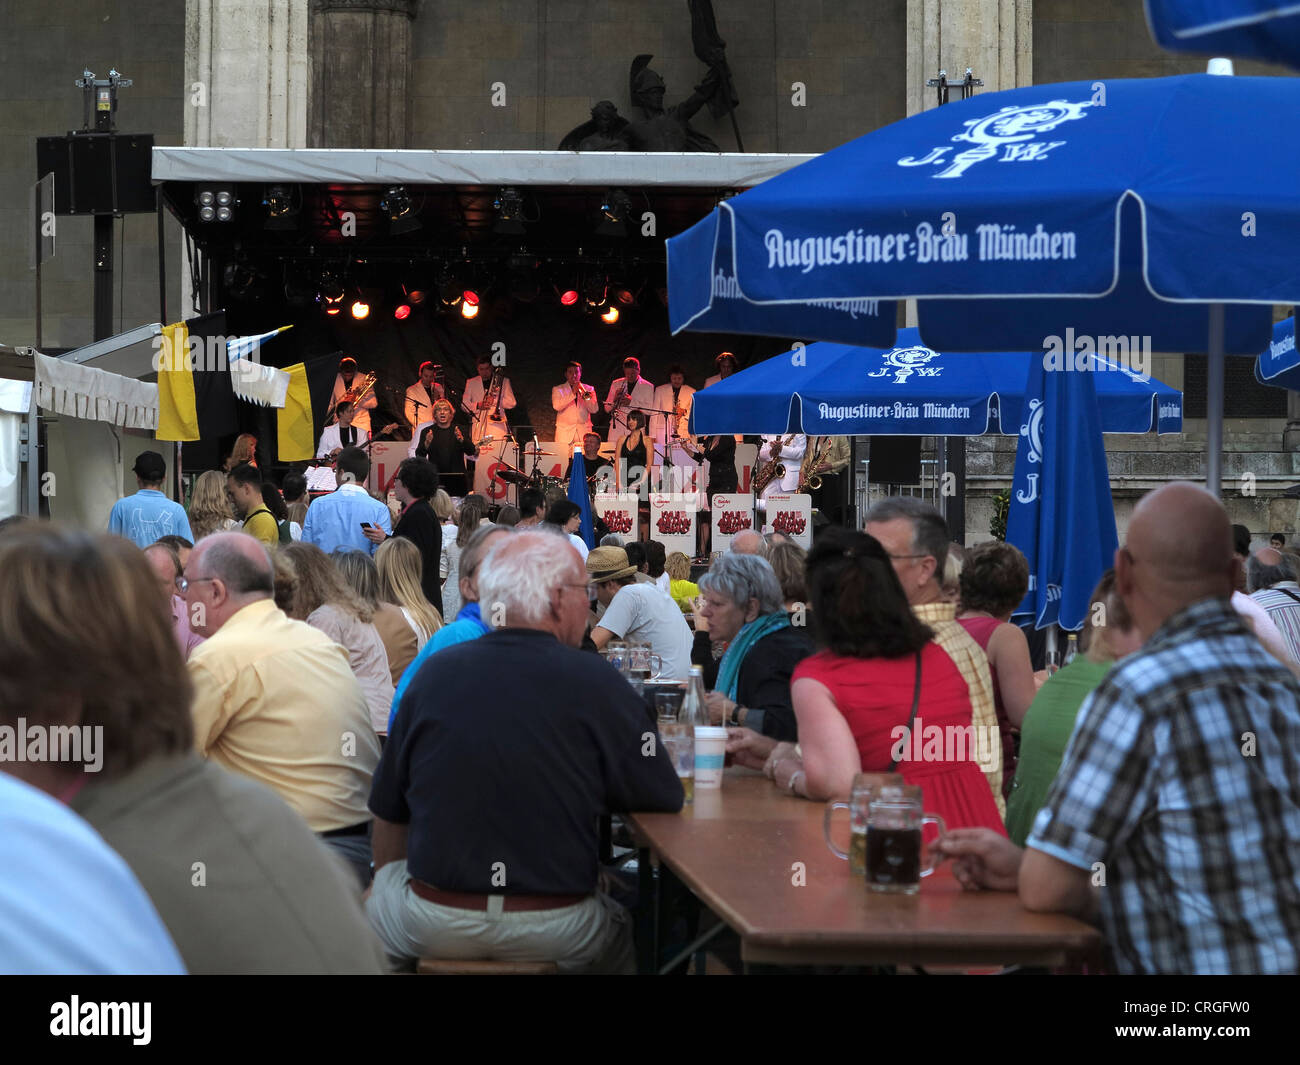 Germania Monaco di Baviera Odeonsplatz città giorno intrattenimento mangiare e bere festival Foto Stock